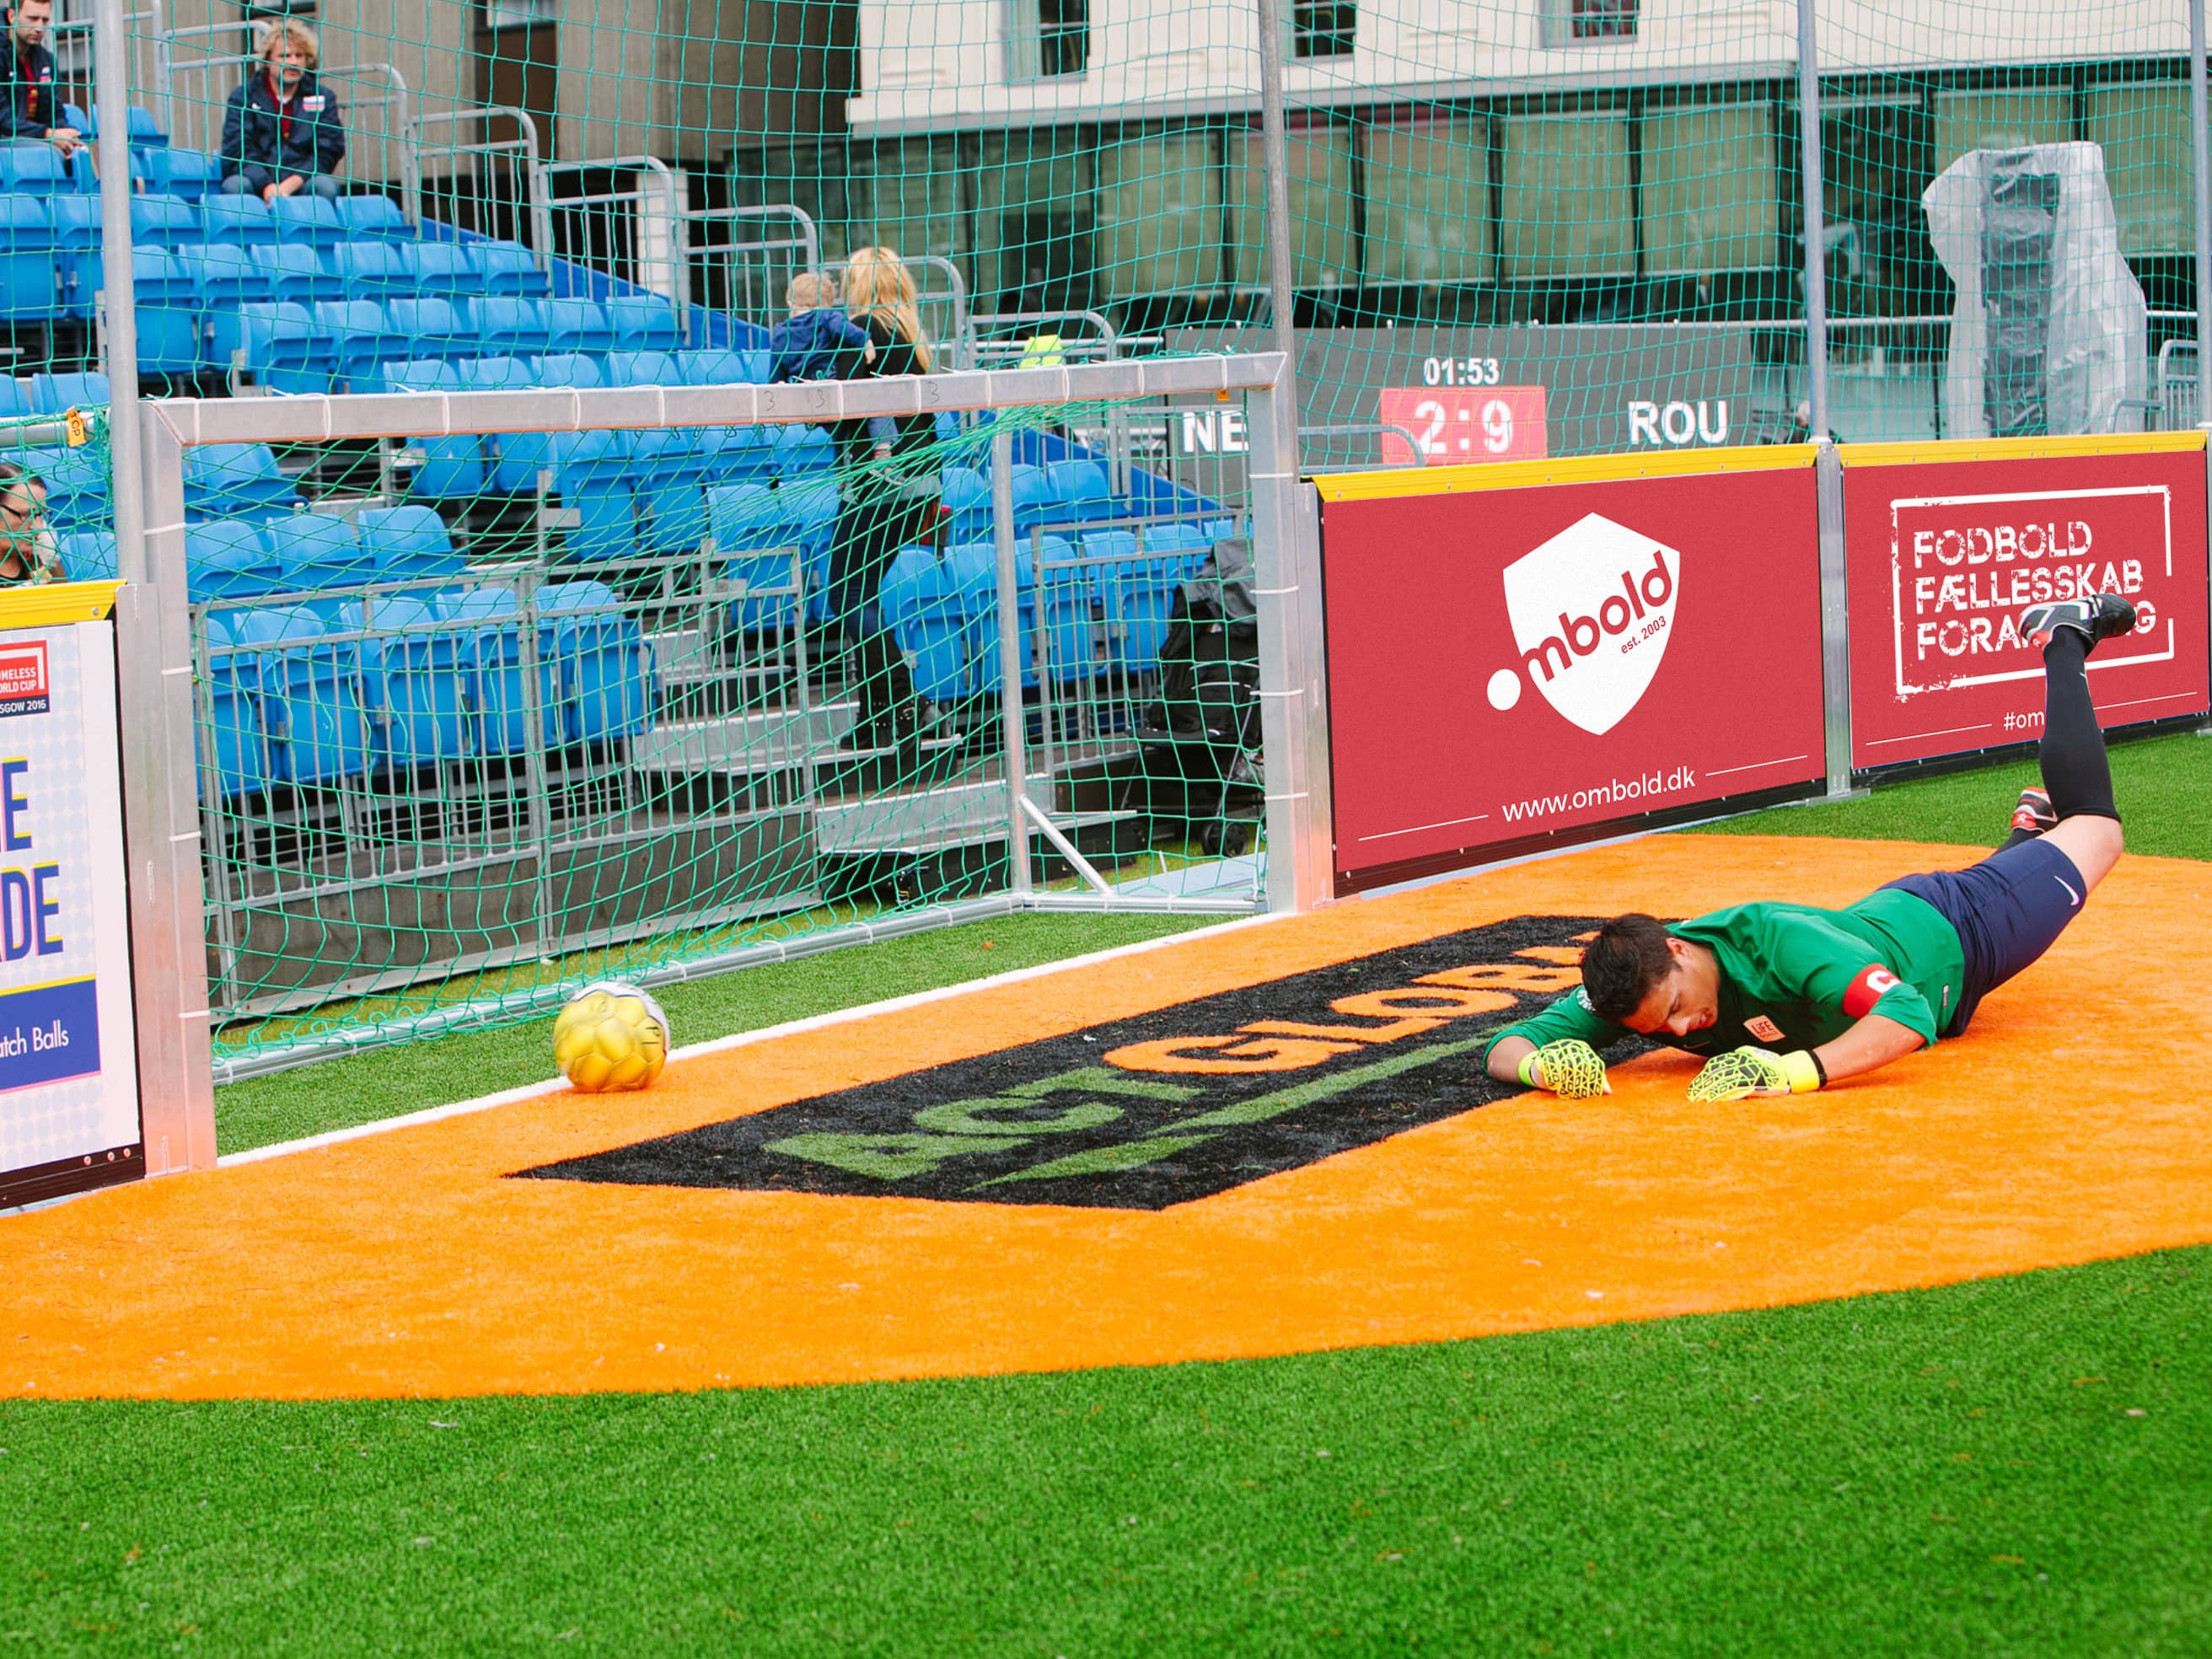 Bannerreklamer som del af visuel identitet til Ombold Gadefodbold